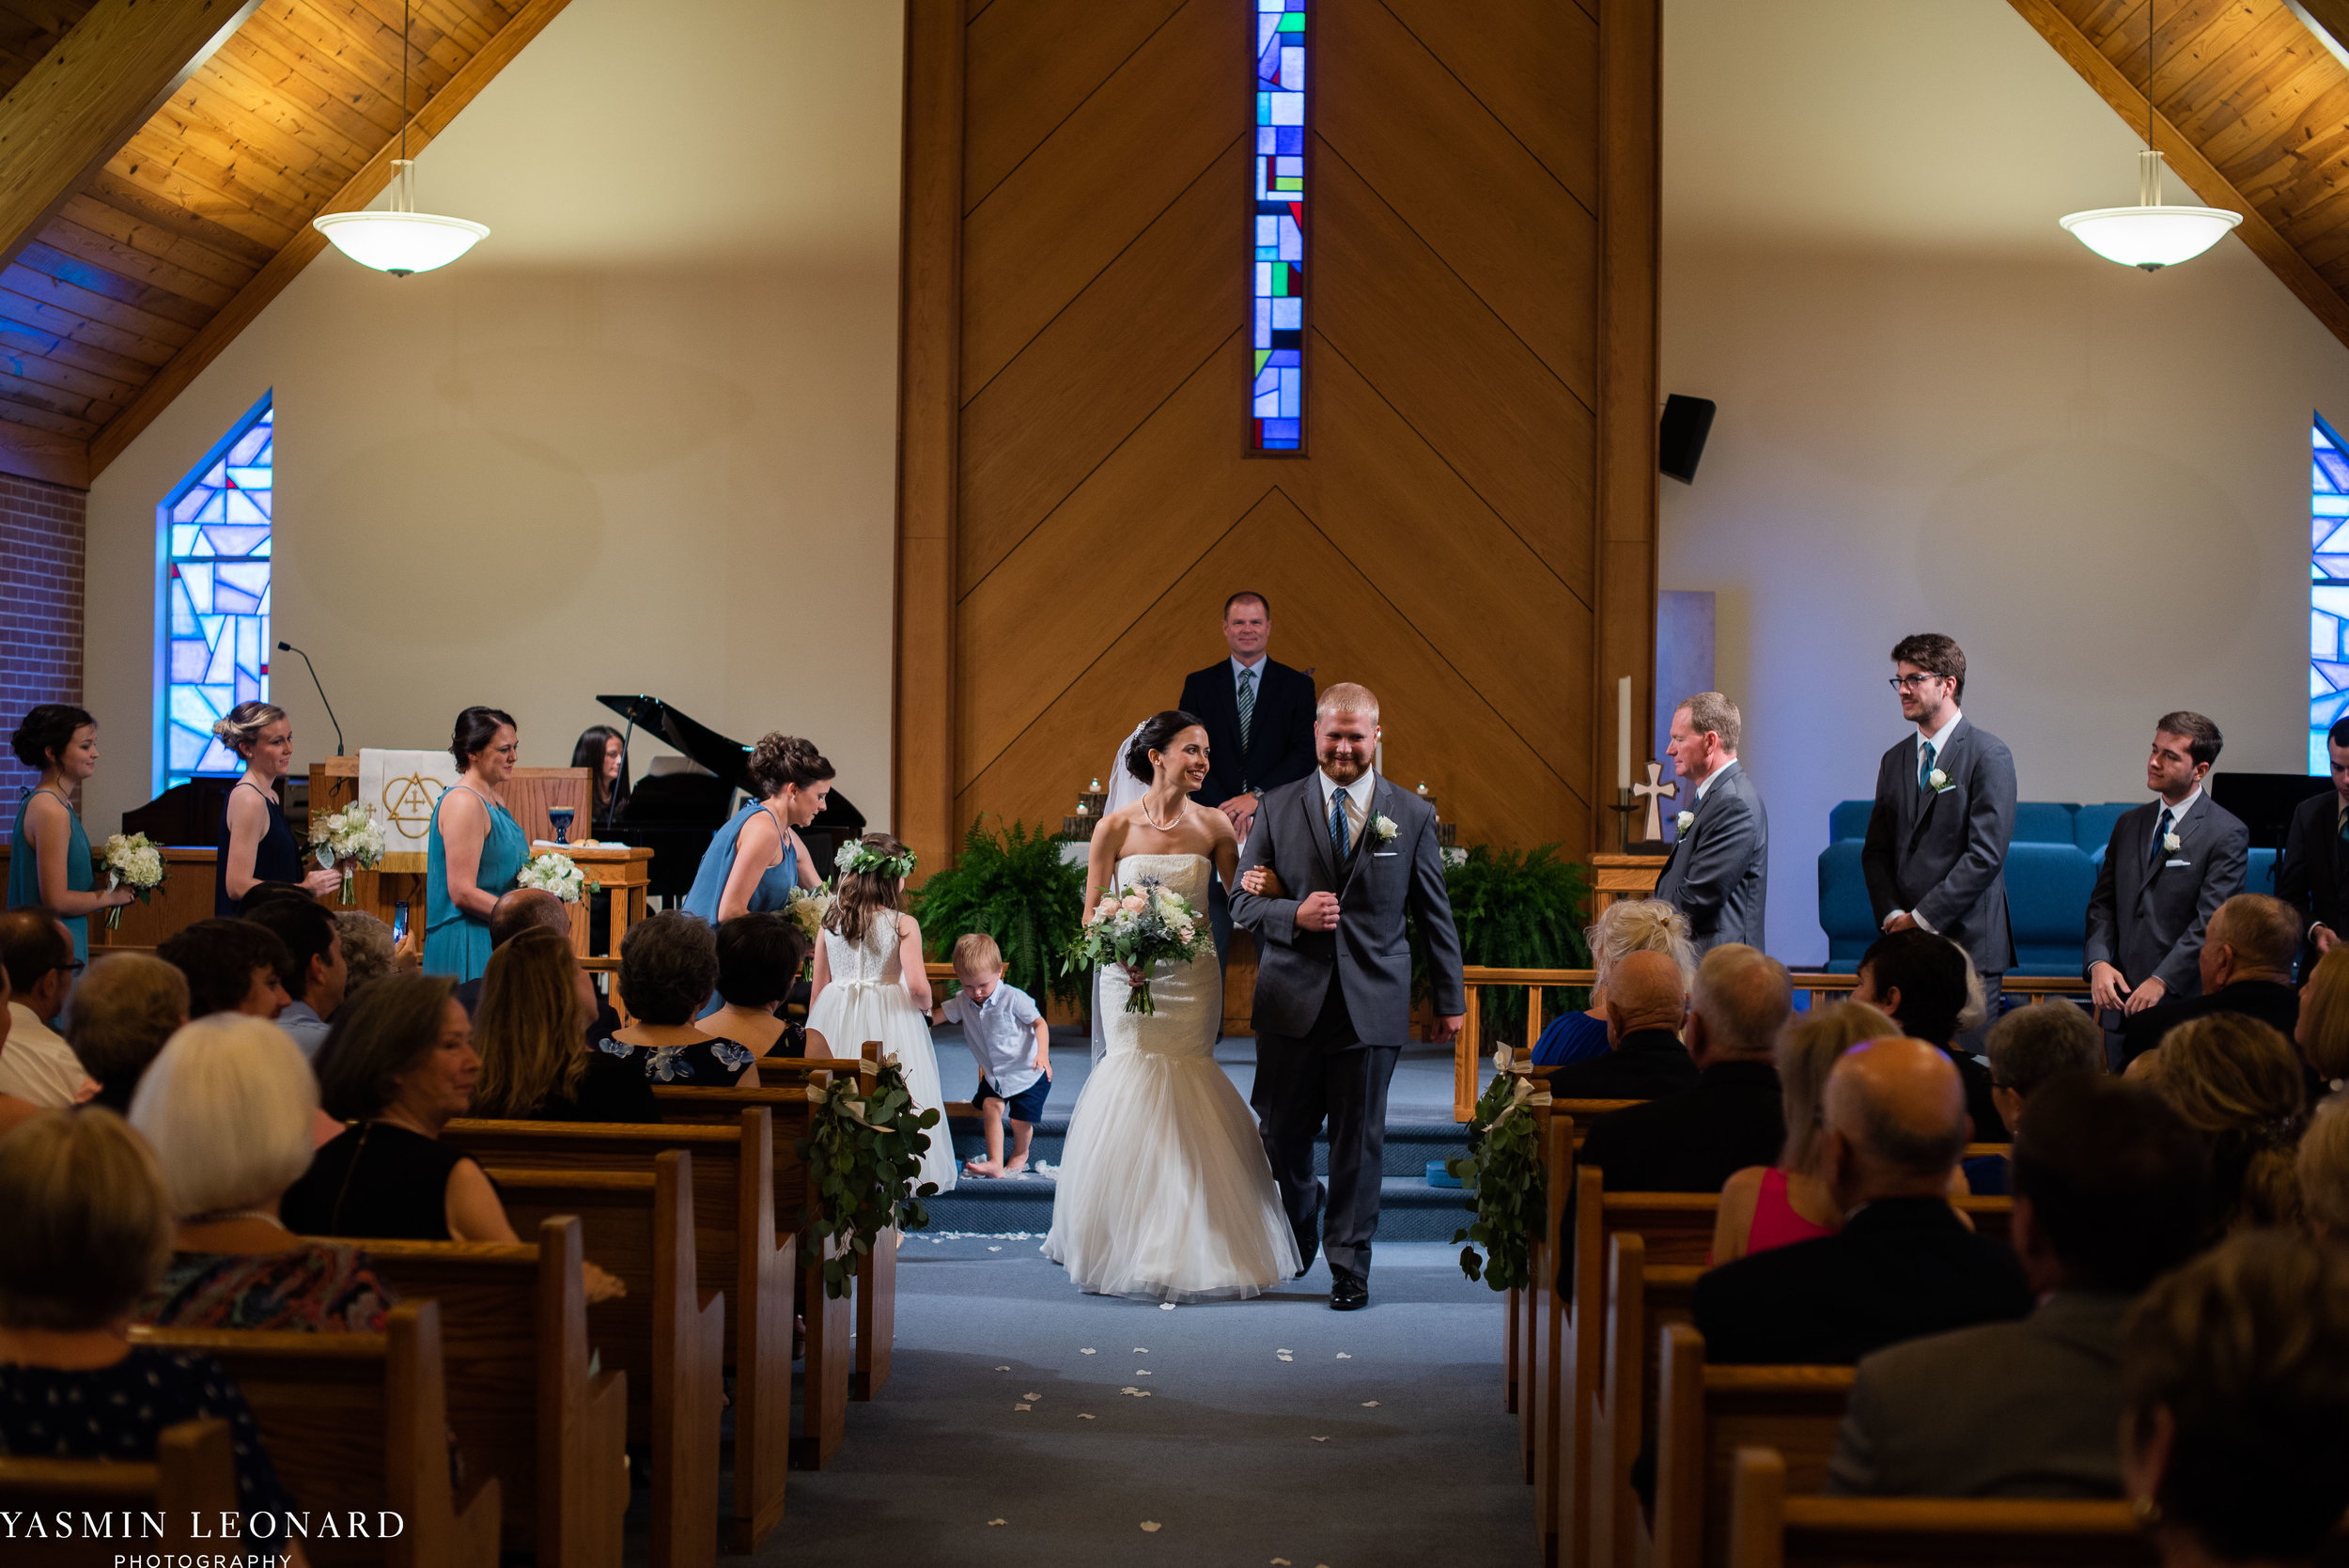 Mt. Pleasant Church - Church Wedding - Traditional Wedding - Church Ceremony - Country Wedding - Godly Wedding - NC Wedding Photographer - High Point Weddings - Triad Weddings - NC Venues-26.jpg